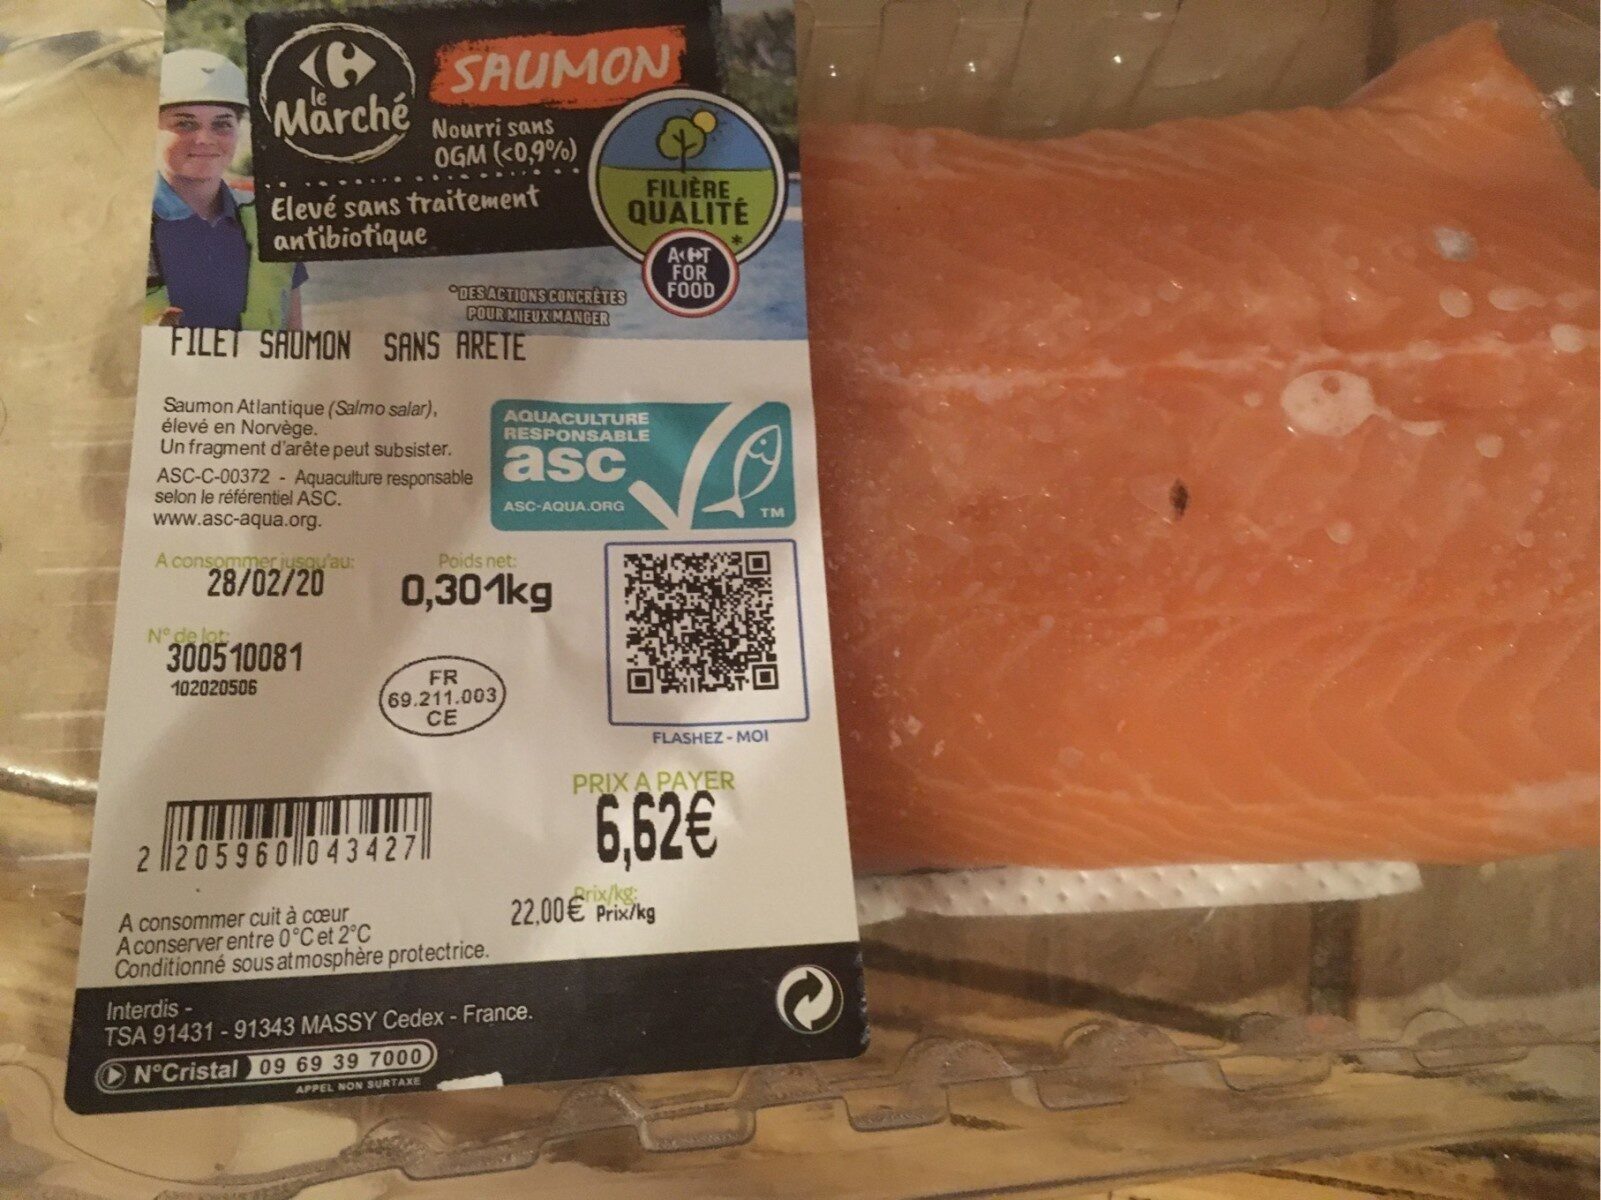 Filet saumon sans arête - Product - fr